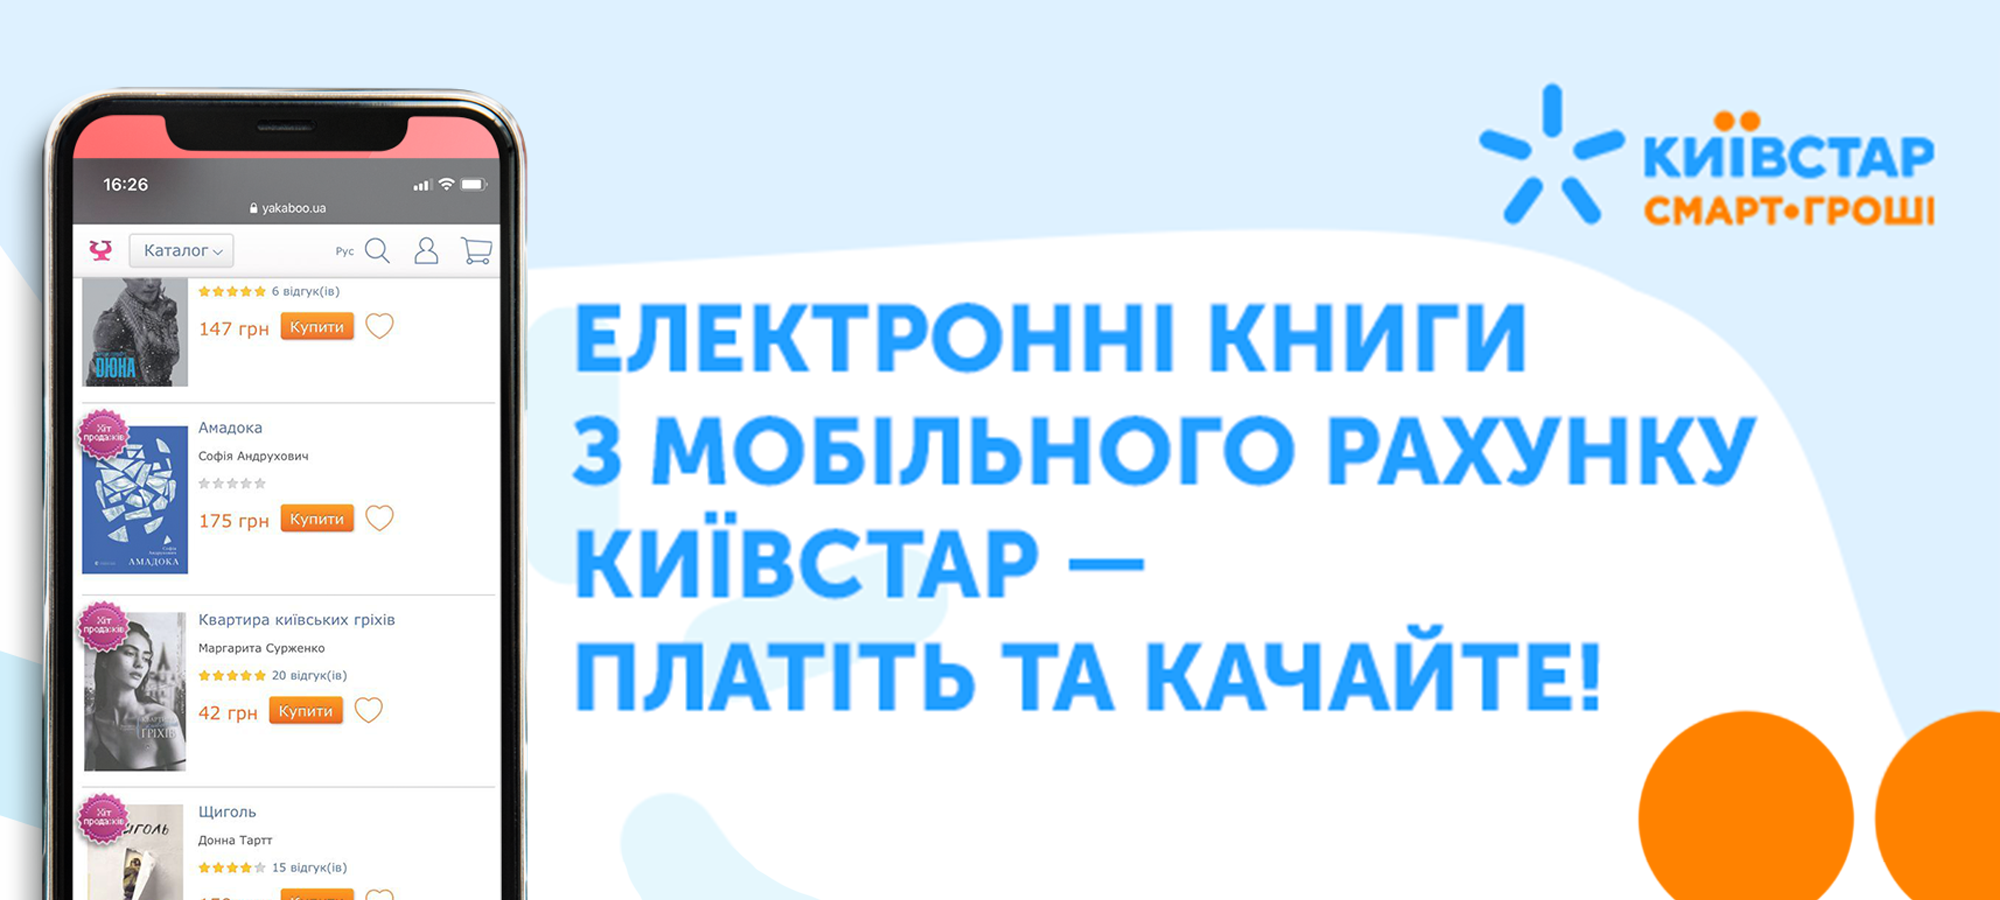 Плати з мобільного рахунку Київстар – отримуй знижки на електронні книги на сайті Yakaboo 0